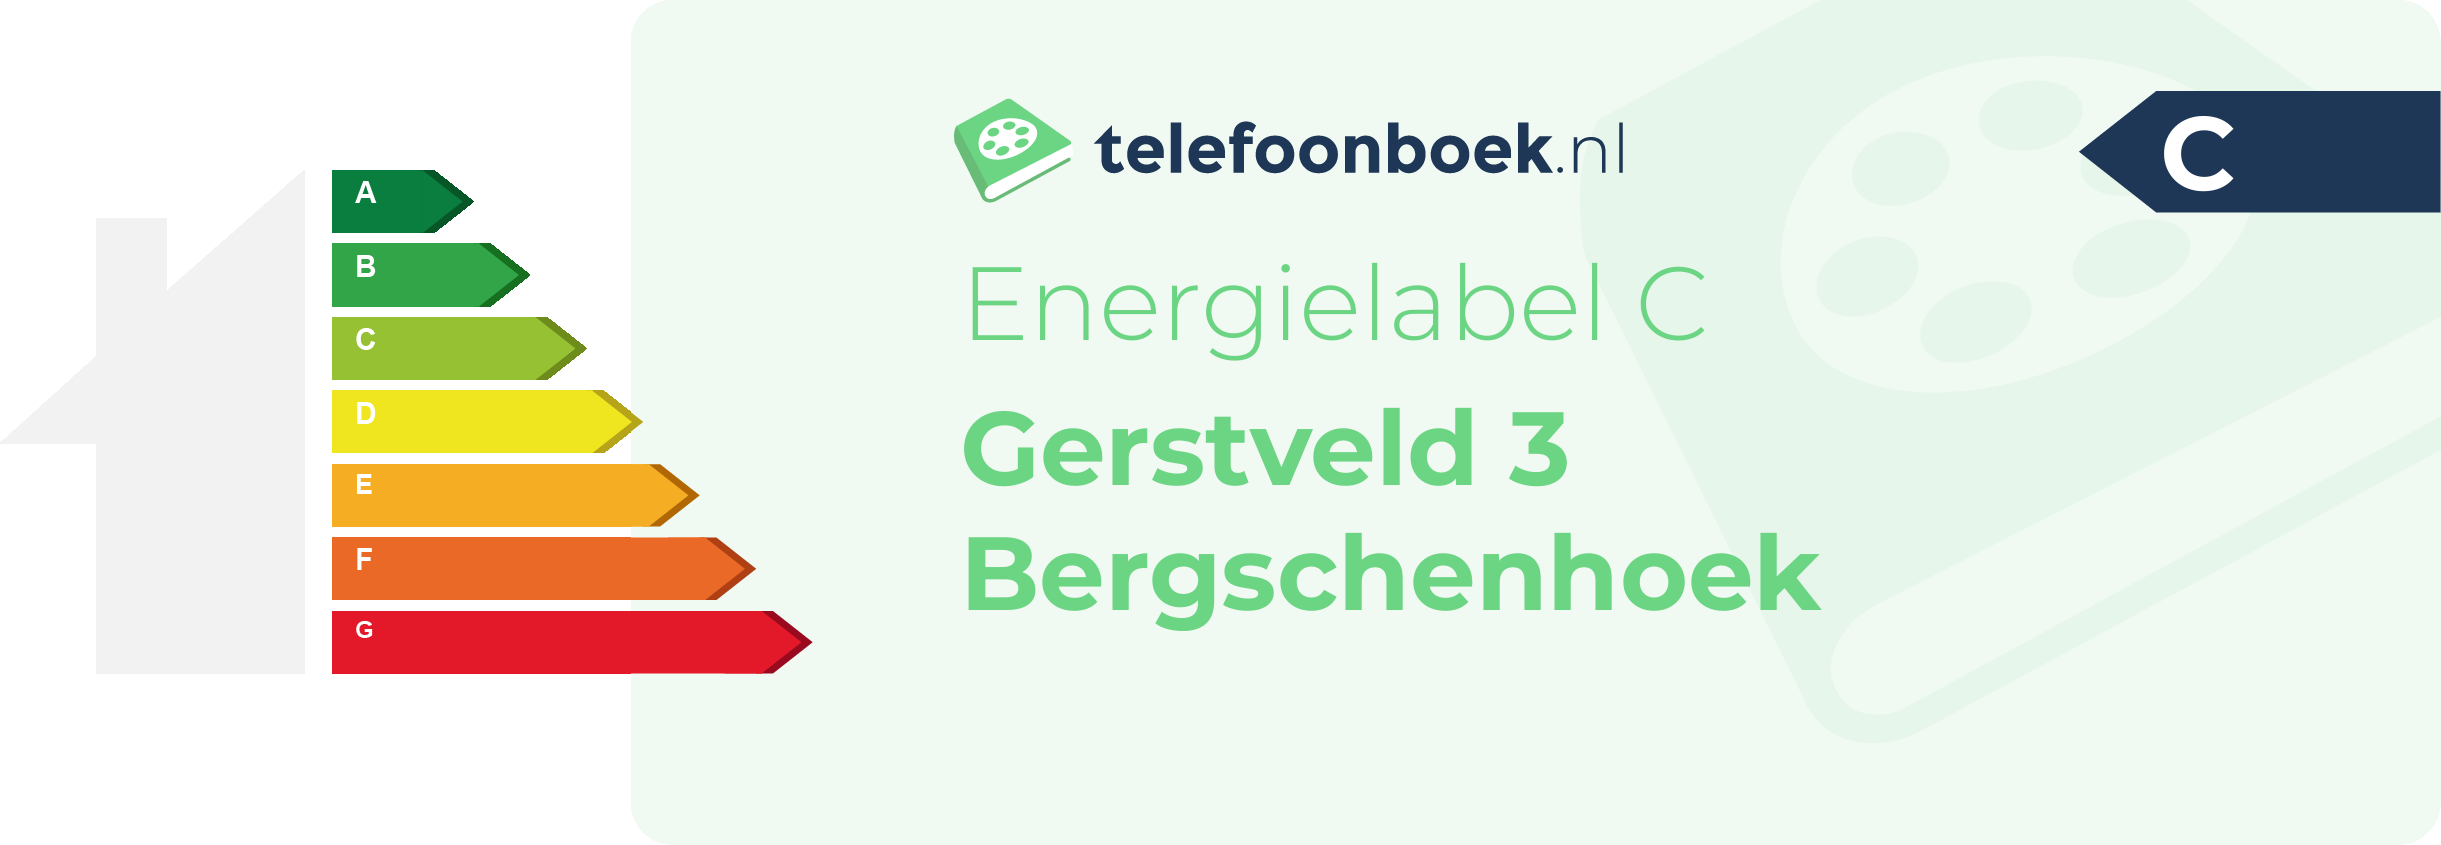 Energielabel Gerstveld 3 Bergschenhoek